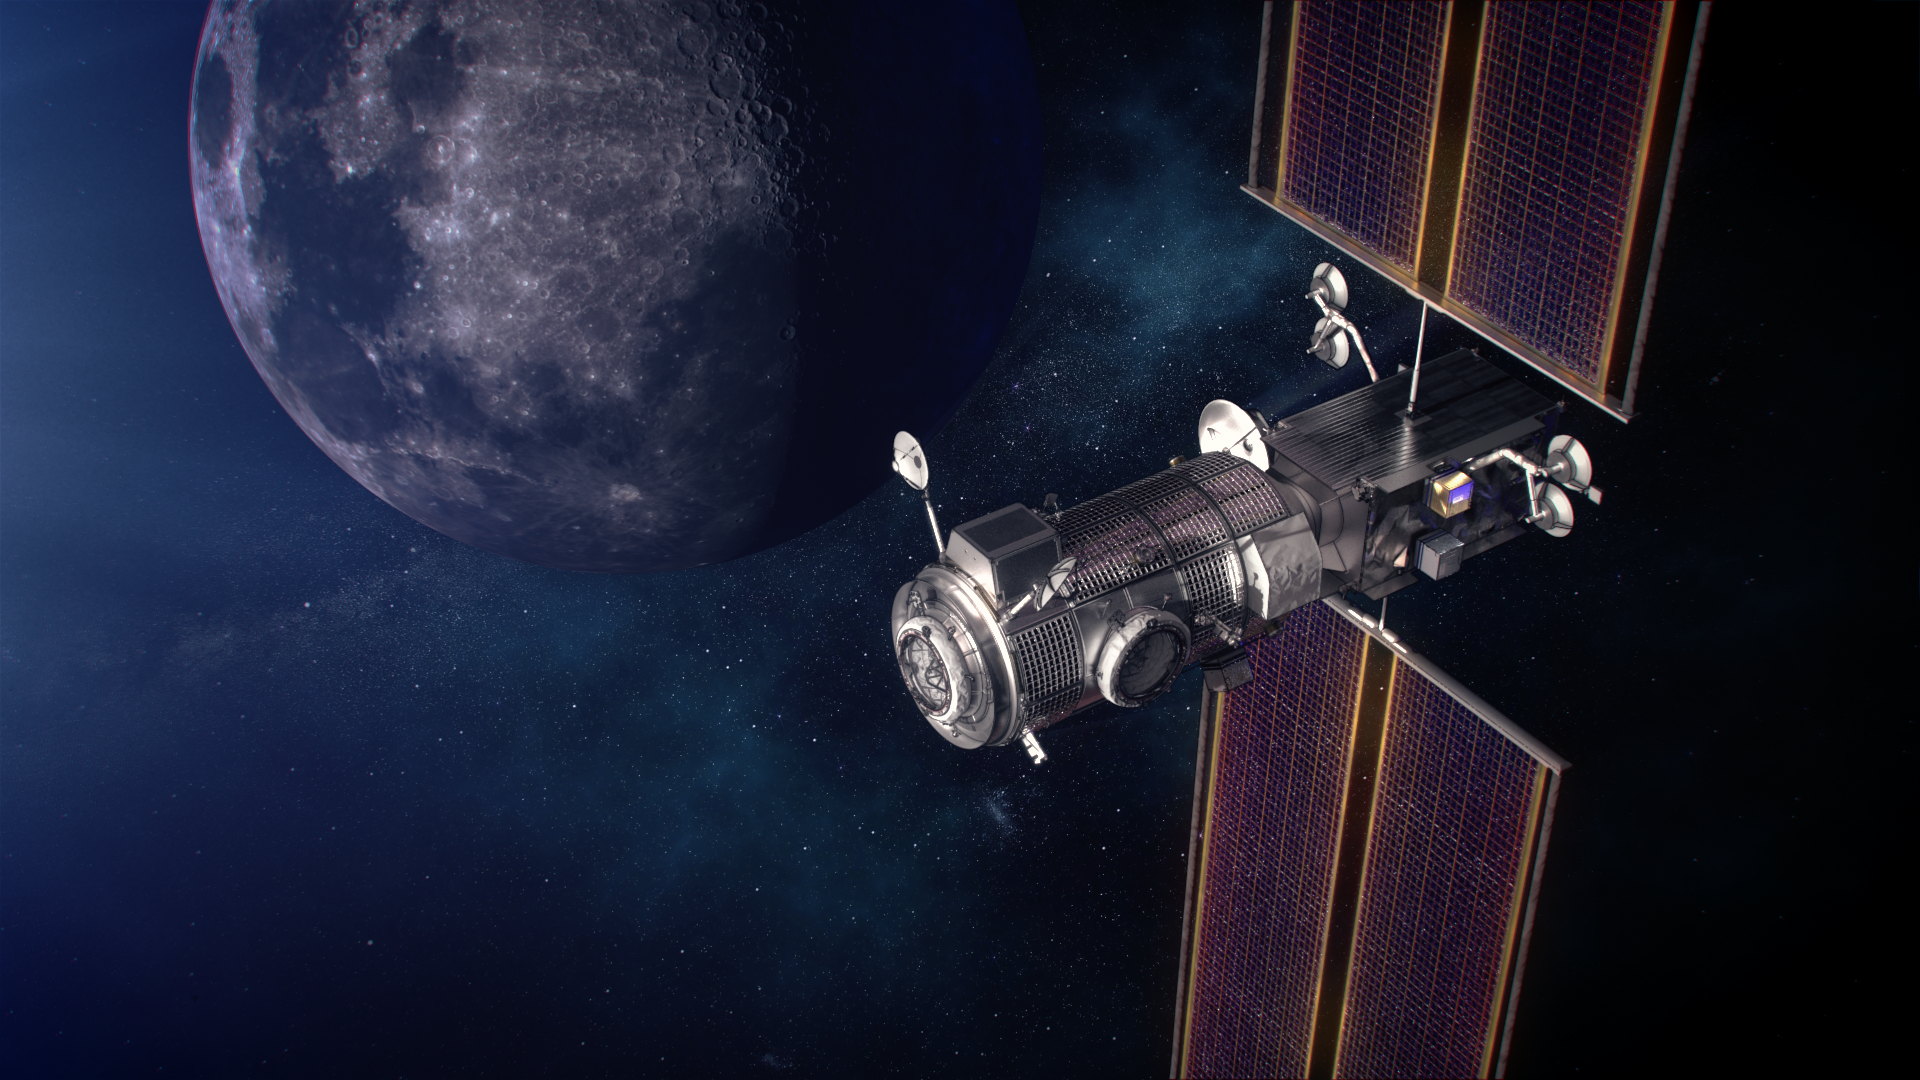 een satelliet met zonnepanelen en wetenschappelijke instrumenten draait in een baan in de ruimte met de maan op de achtergrond